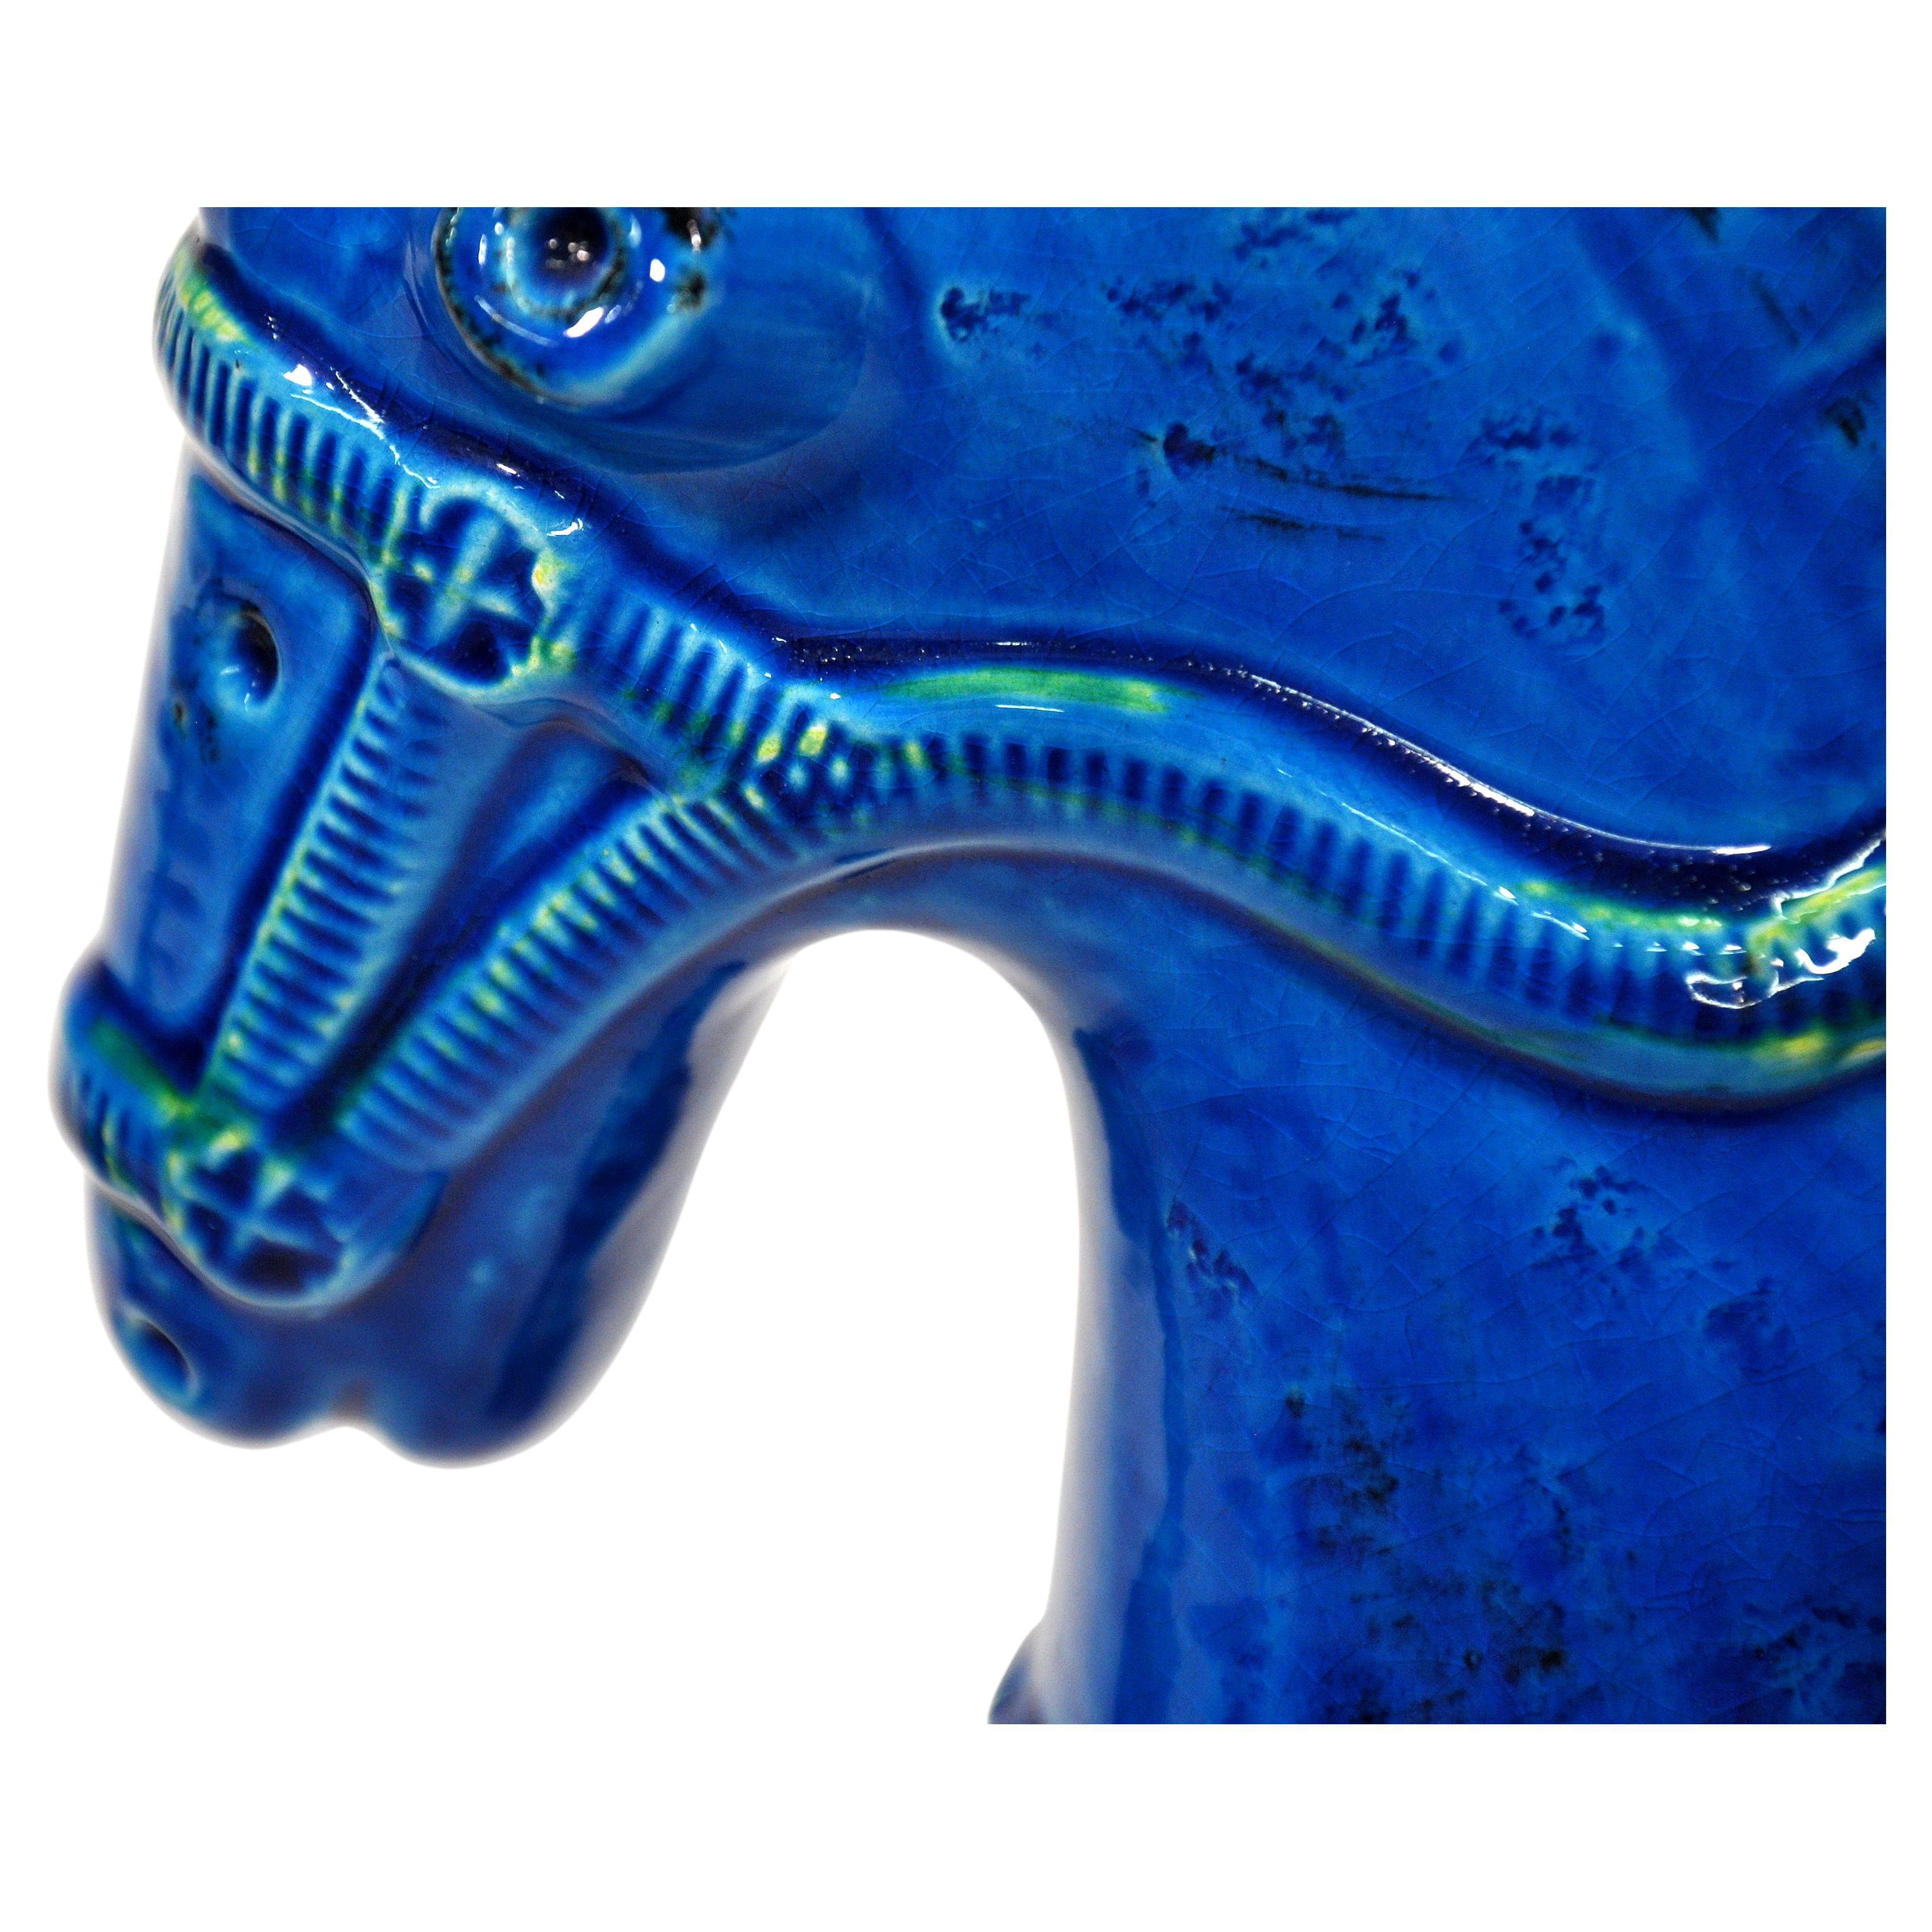 Beeindruckendes Paar italienischer handgefertigter Keramik-Pferdeskulpturen in dem leuchtenden Blau von Aldo Londis ikonischer Keramikkollektion Rimini Blu, die ursprünglich 1959 für Bitossi Ceramiche entworfen und in den 1960er Jahren von Raymor